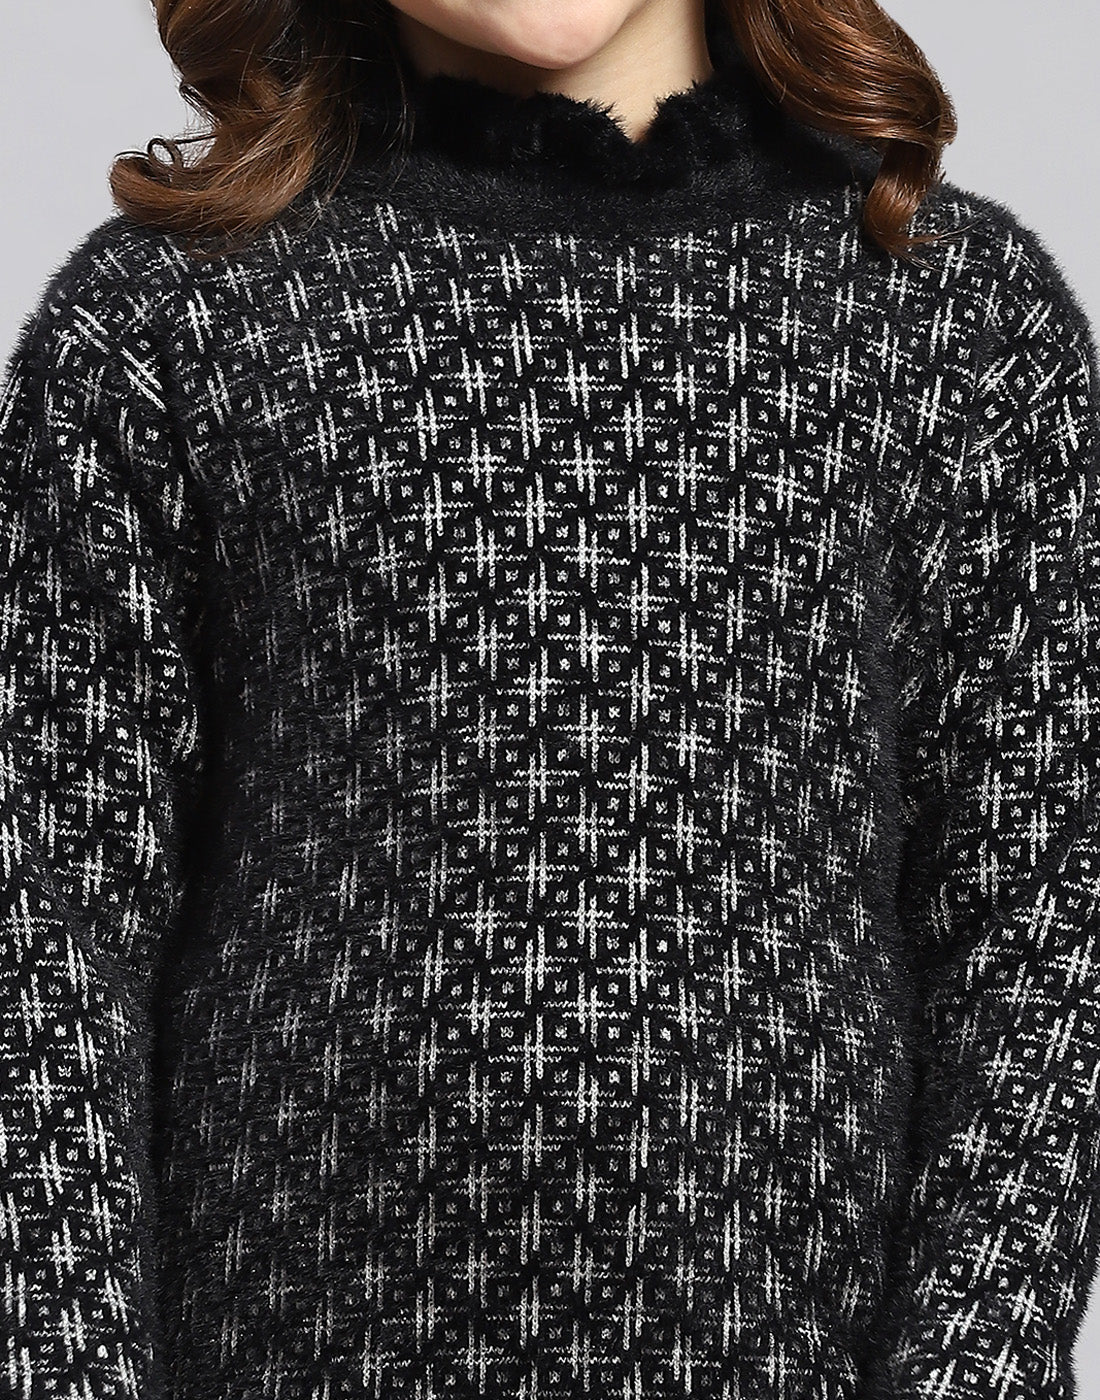 Girls Black Self Design F Neck Full Sleeve Sweater